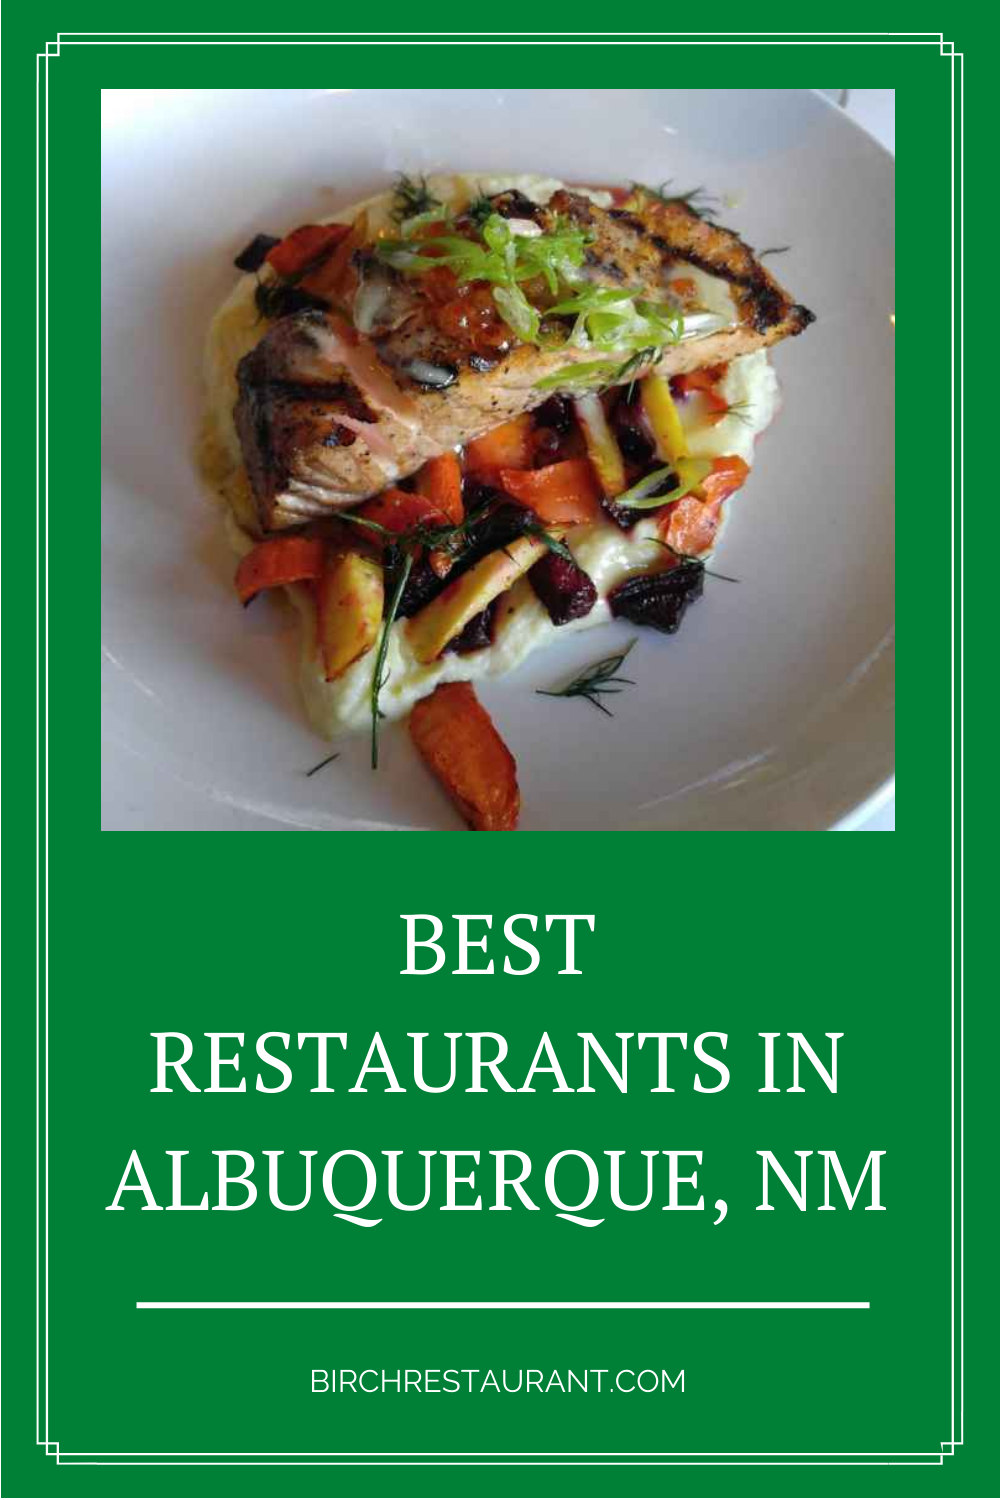 Best Restaurants in Albuquerque